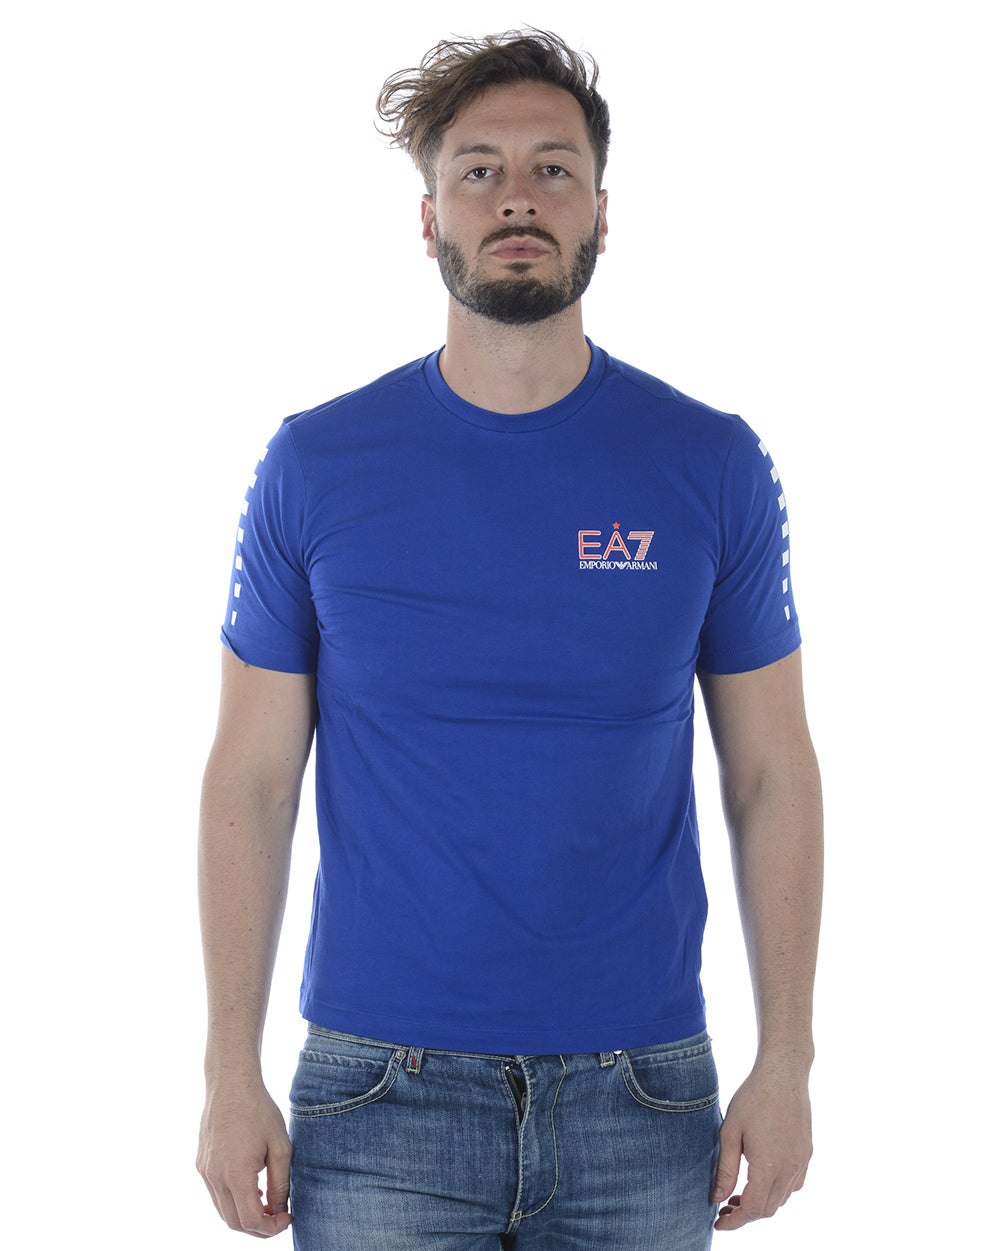 Maglietta EA7 Emporio Armani Blu - mem39